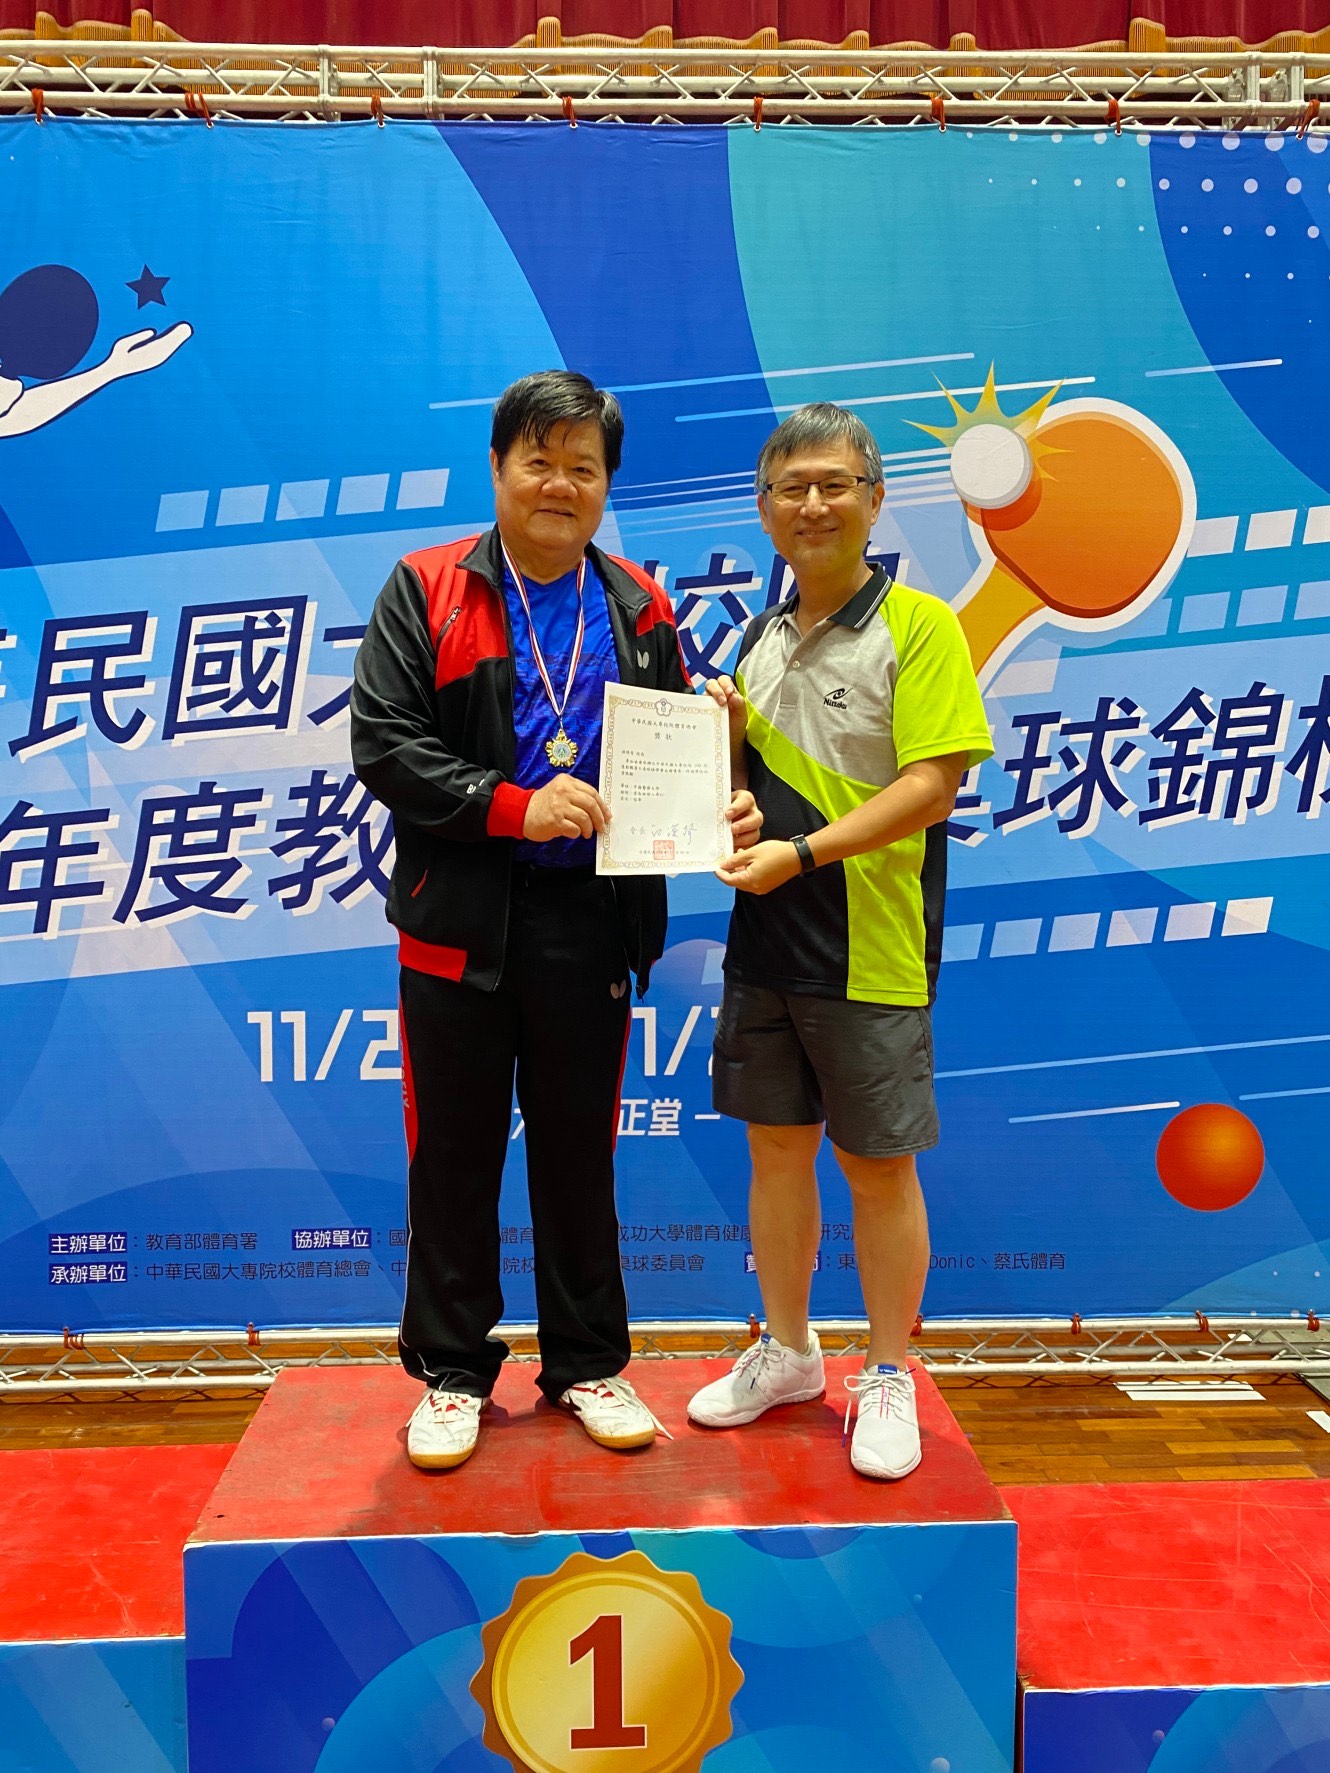 
	洪明奇校長榮獲今年全國大專校院桌球賽首長組單打冠軍。
